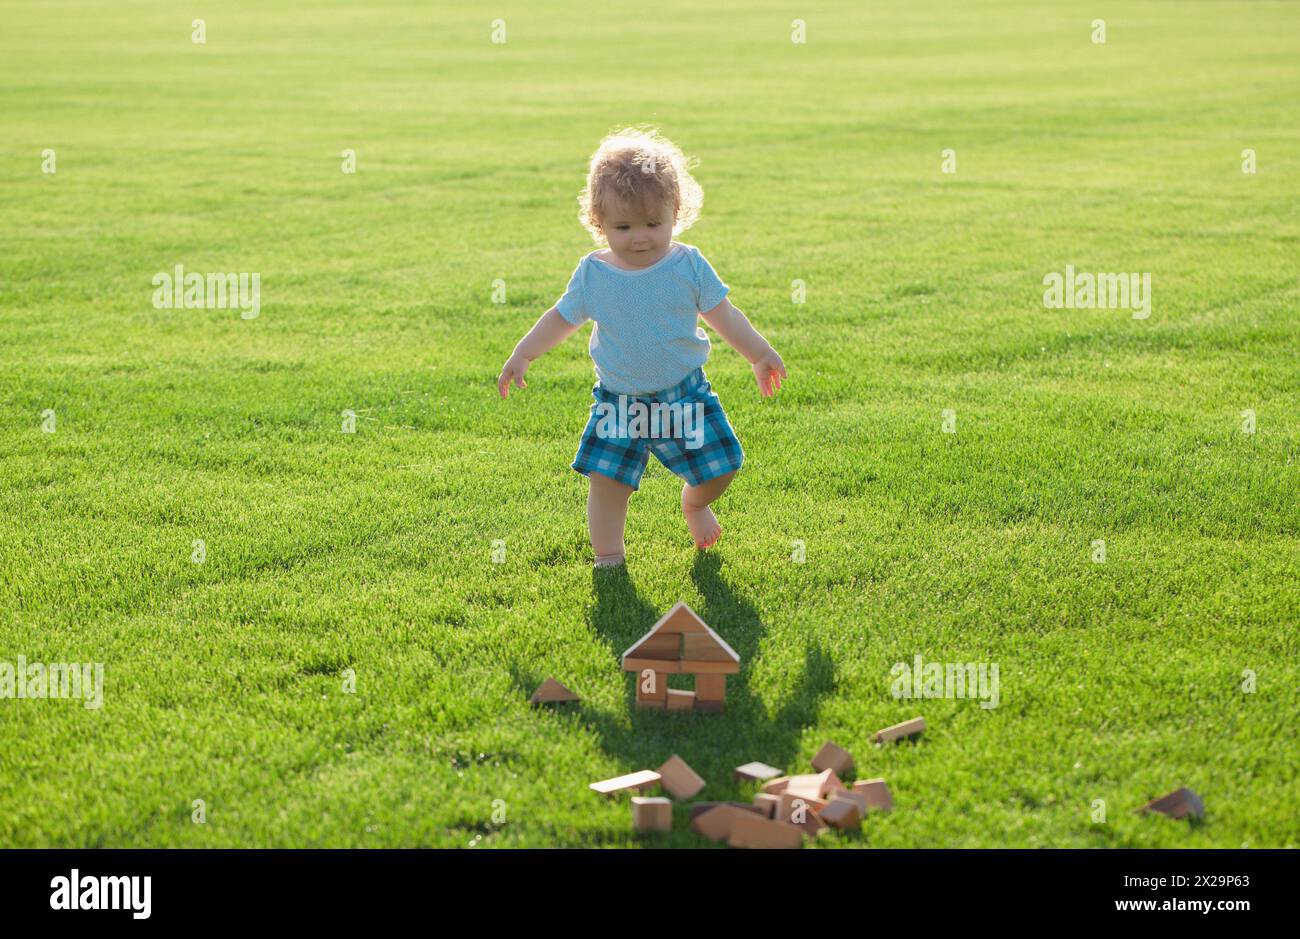 Versicherung Kinder. Baby spielen im grünen Gras. Entwicklung von Kindern. Stockfoto